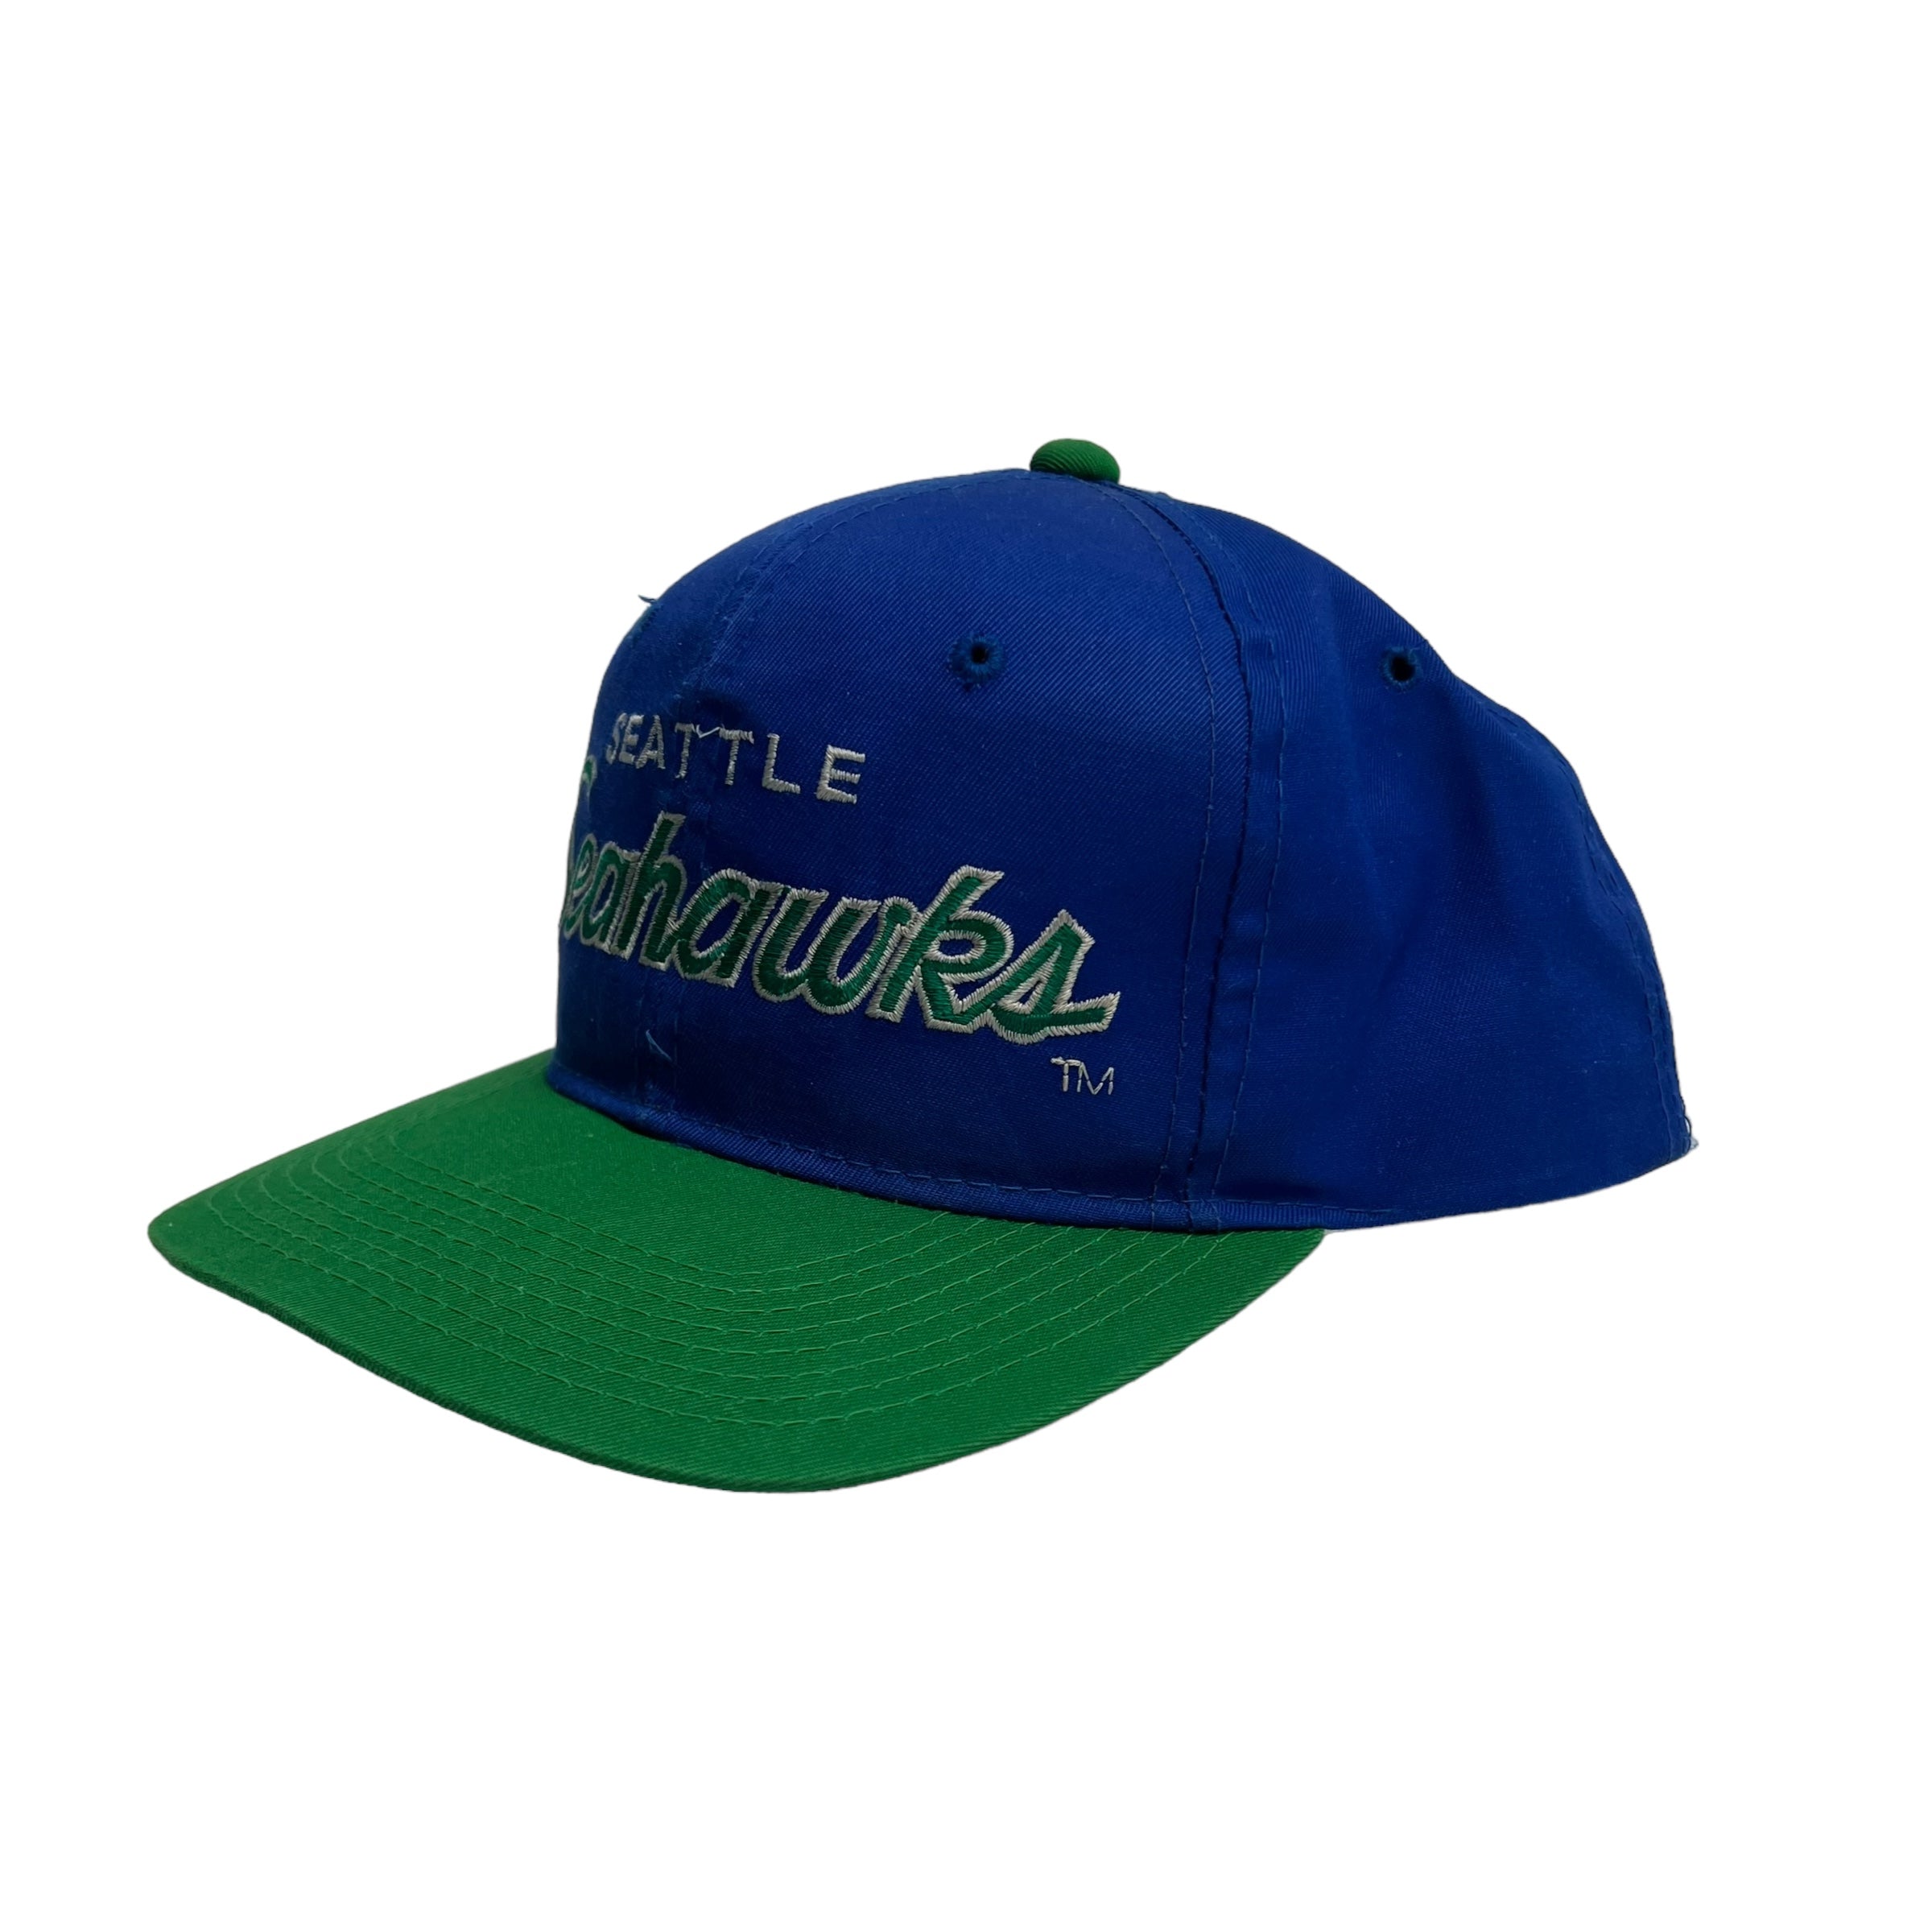 Vintage Seattle Seahawks Sports Specialties Twill Script Hat